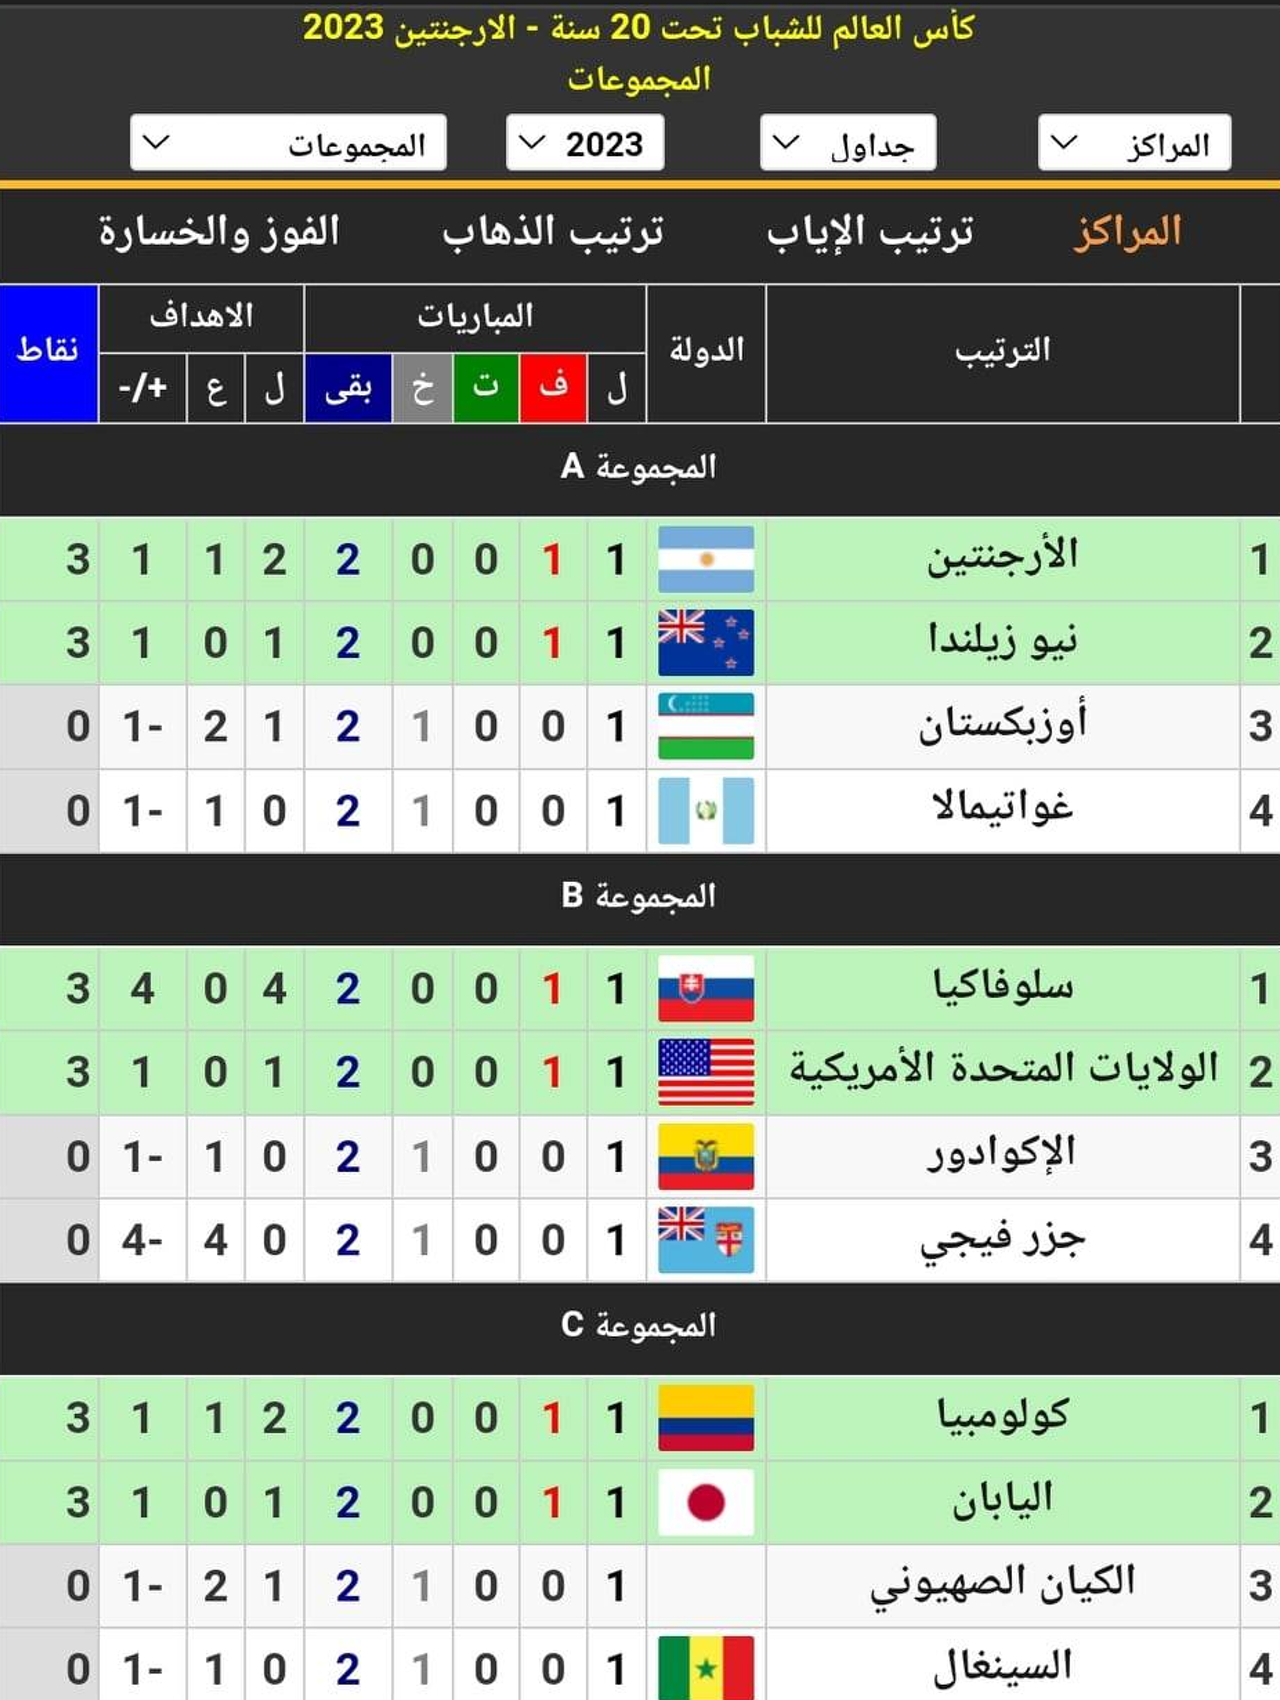 جدول ترتيب المجموعات الست في كأس العالم للشباب 2023 أثناء الجولة الأولى بعد انتهاء مباريات اليوم الاثنين